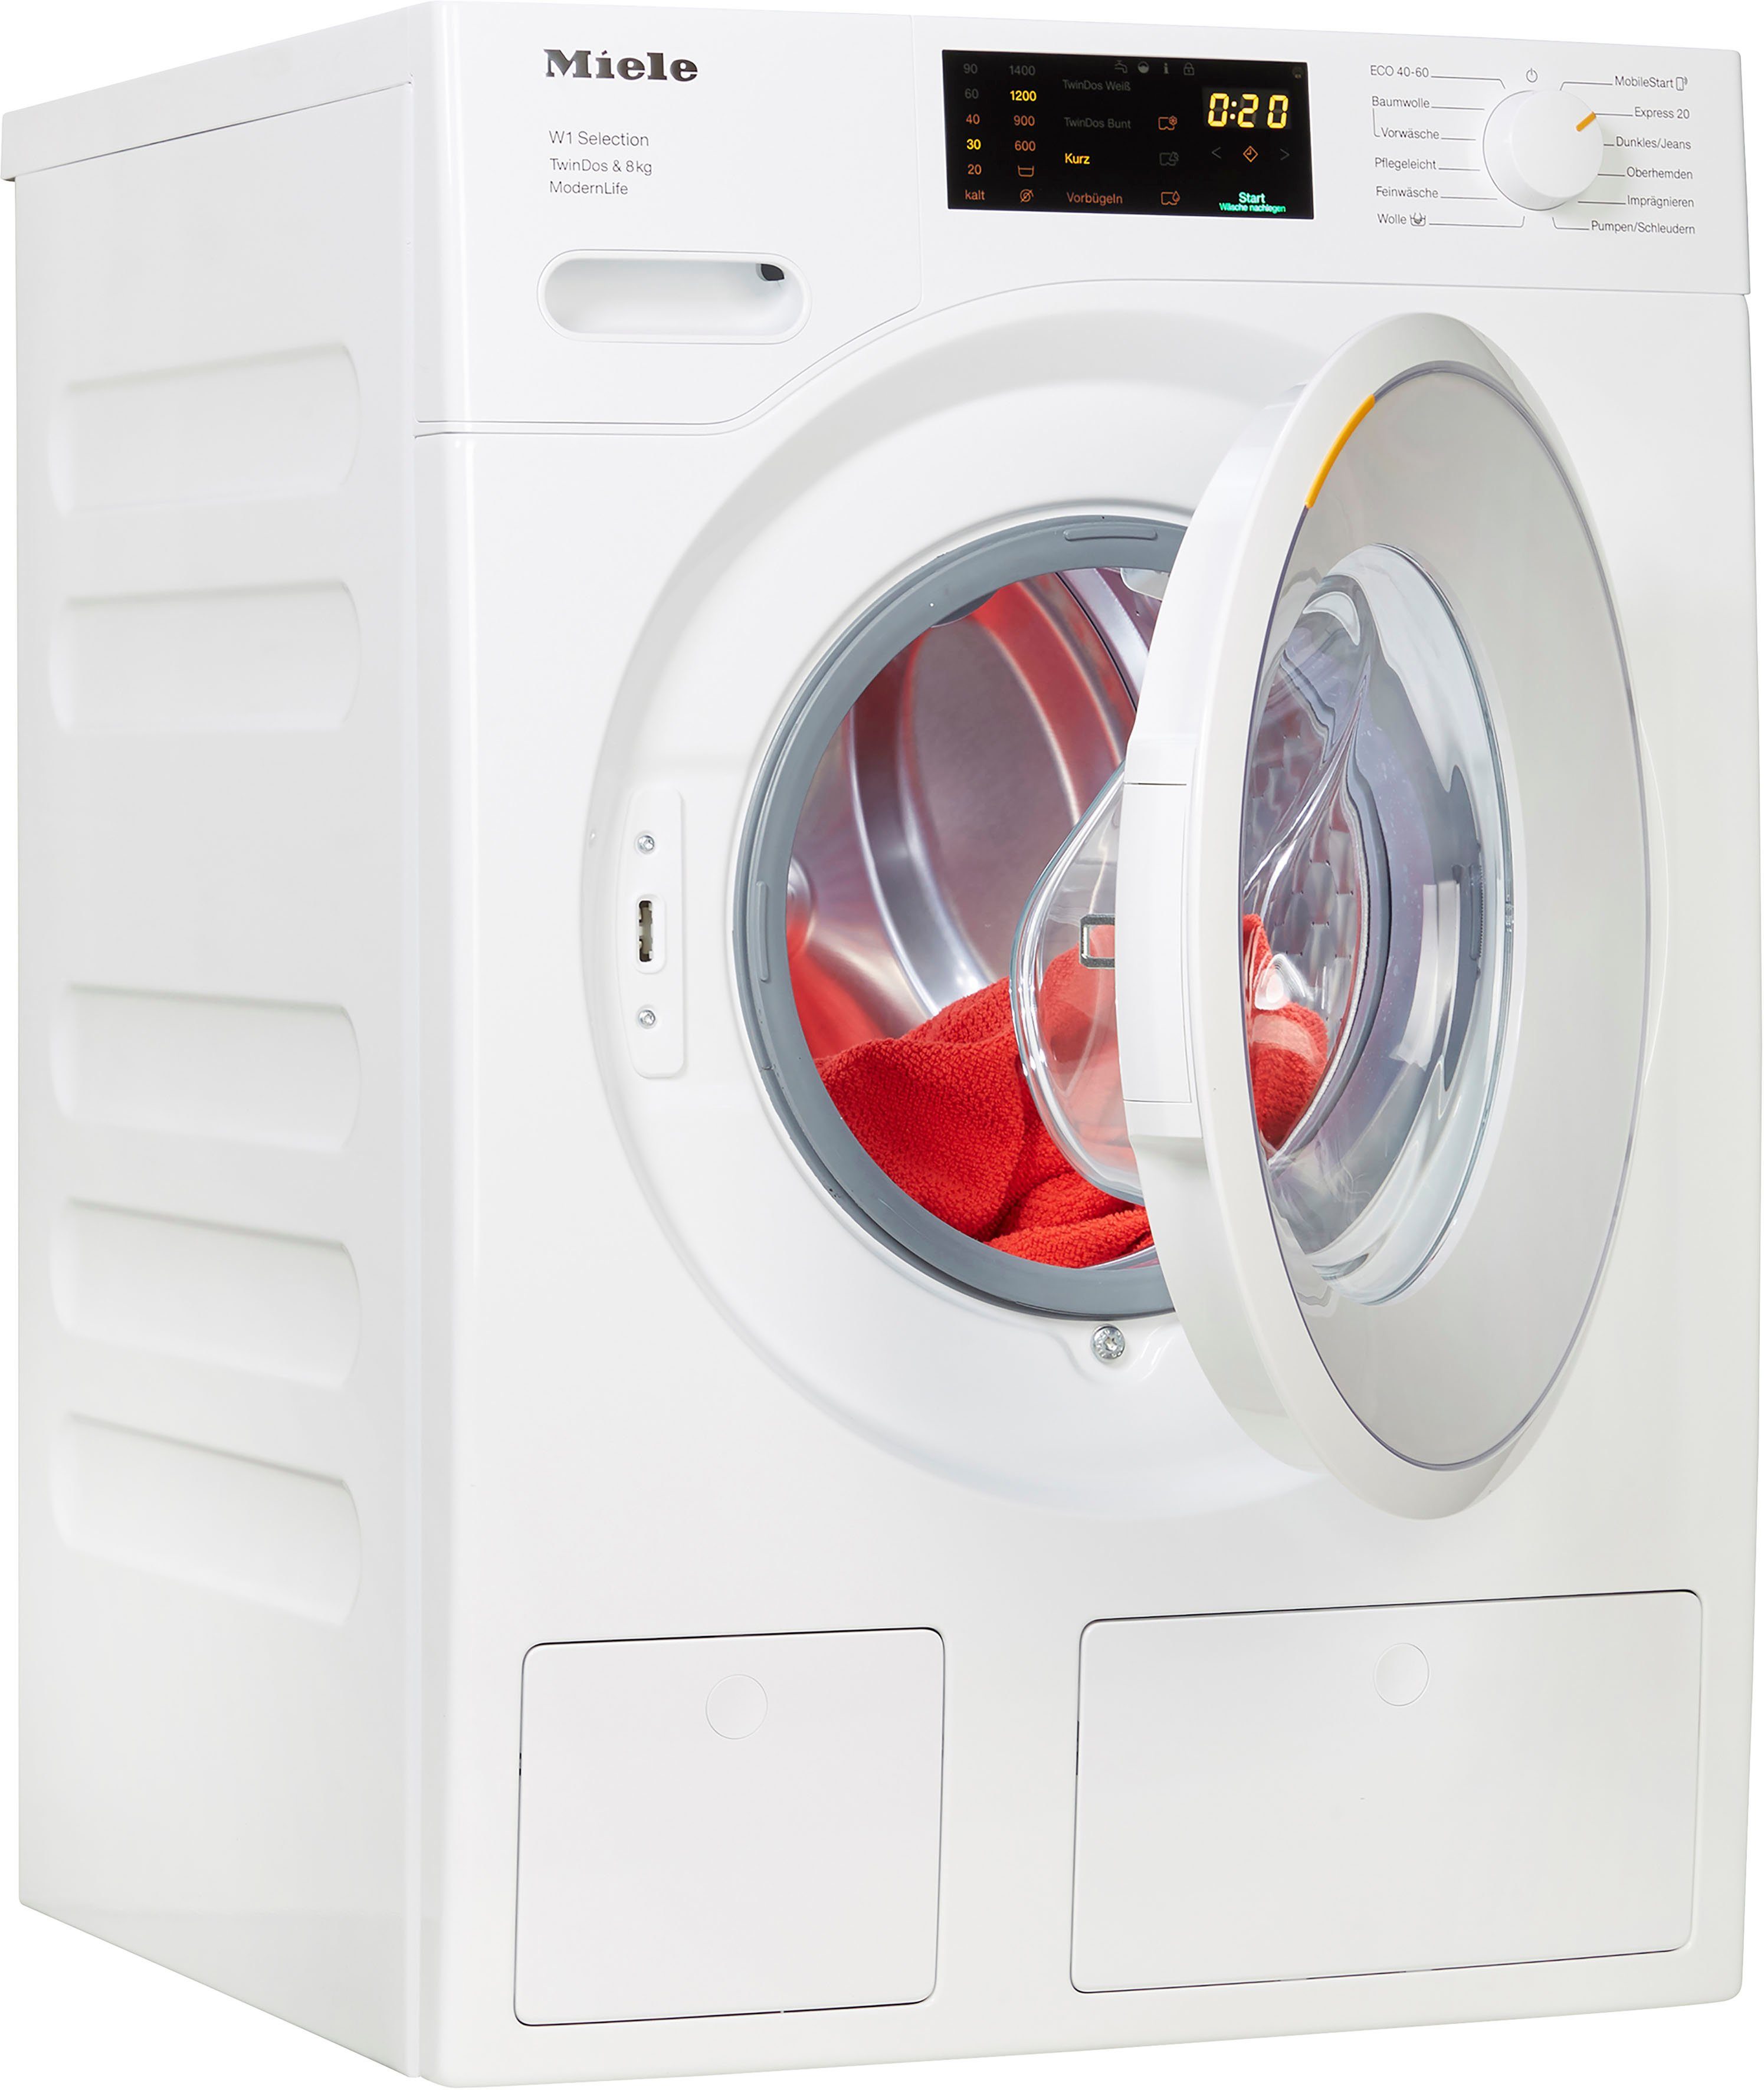 Miele Waschmaschine MordernLife WSD663 WCS TDos&8kg, 8 kg, 1400 U/min  online kaufen | OTTO